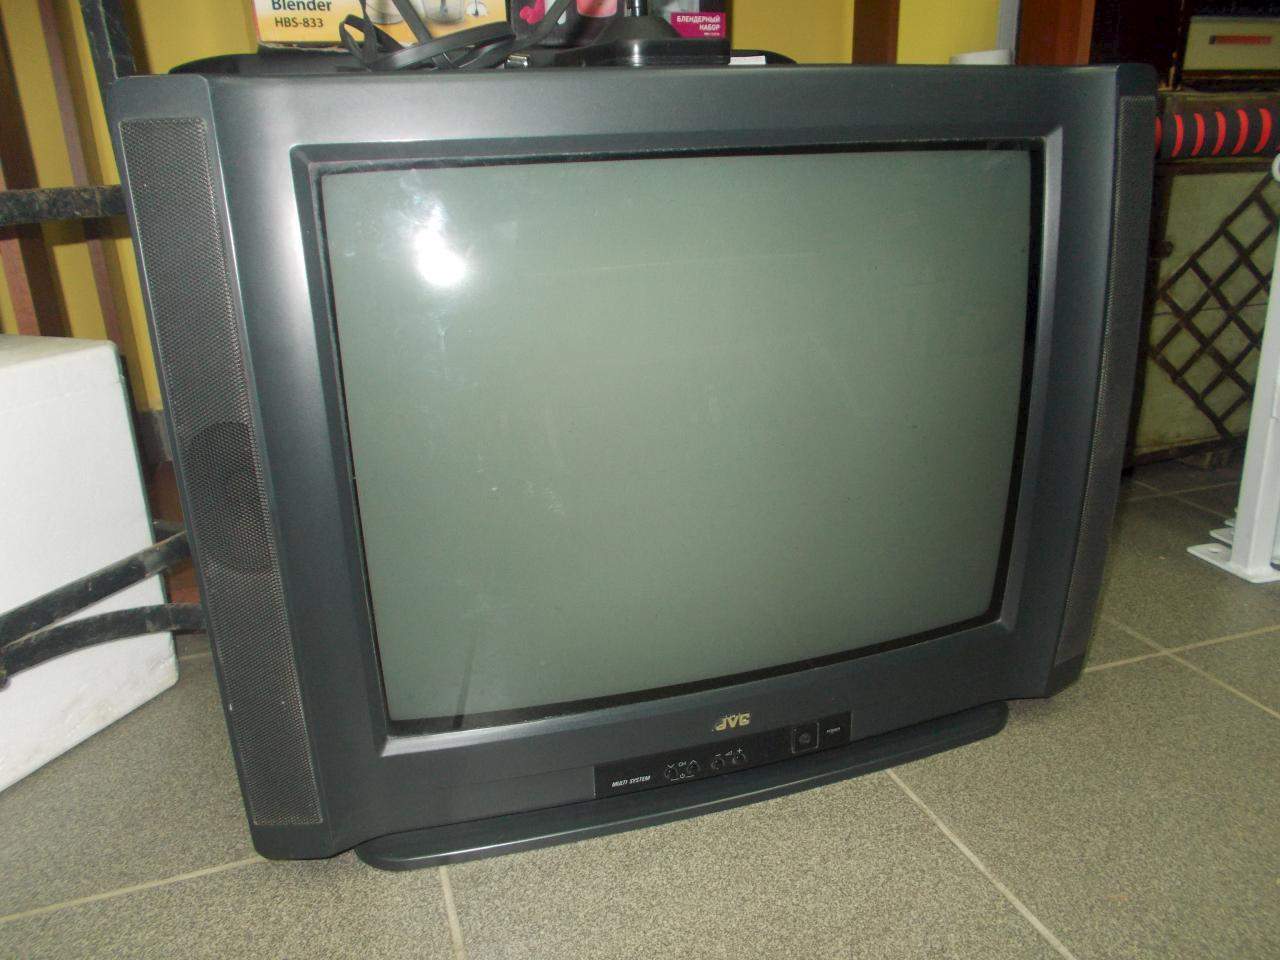 Купить телевизор на авито недорого в москве. Daewoo 14 дюймов кинескопный. Телевизор Sharp ЭЛТ 21 дюйм. LG ЭЛТ 14 дюймов. Телевизор LG 14 дюймов ЭЛТ.